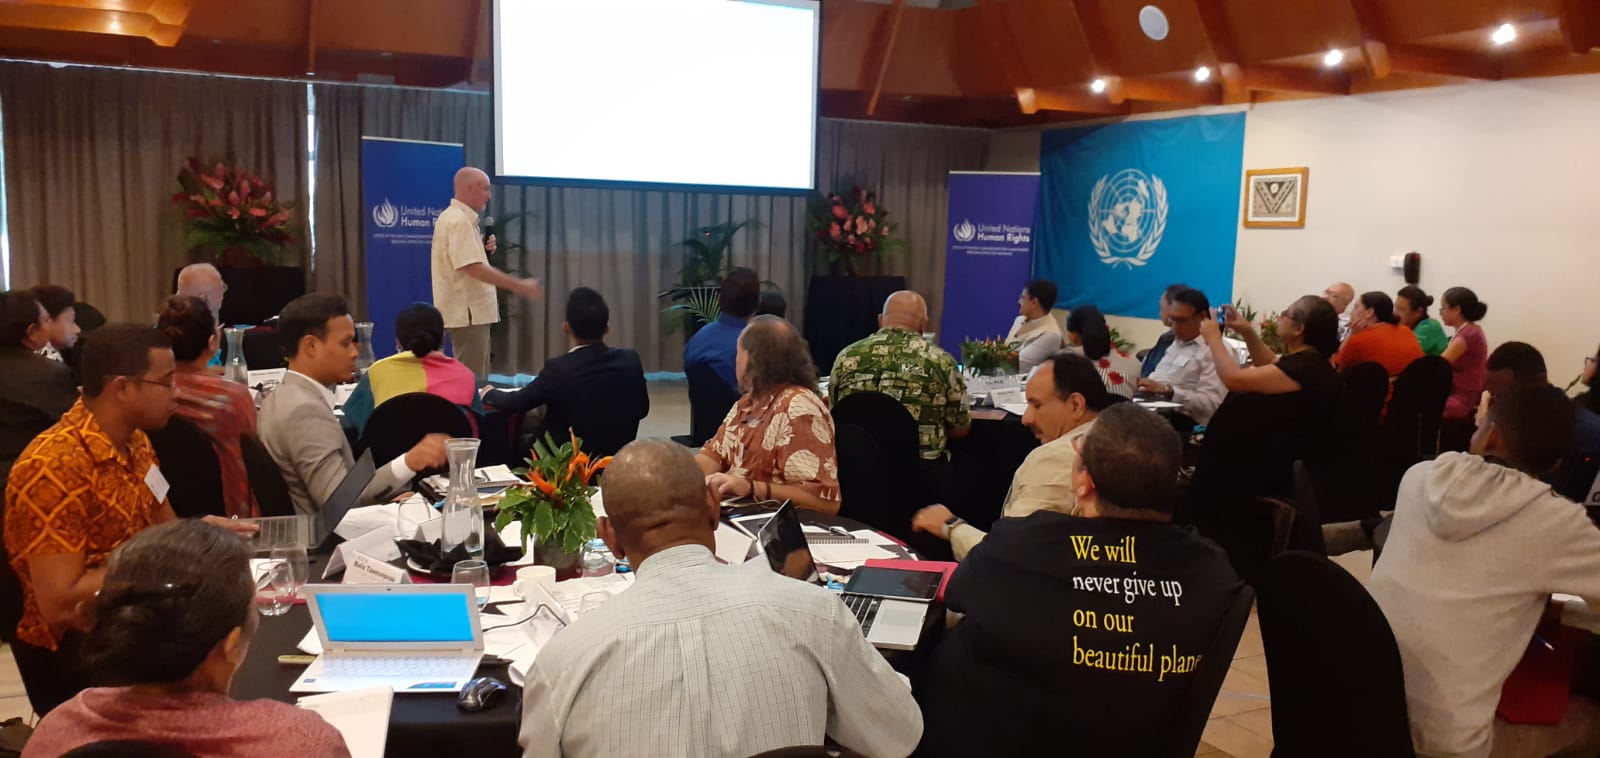 Conferenza delle Nazioni Unite sui cambiamenti climatici e i diritti umani, Fiji, 5-7 agosto 2019